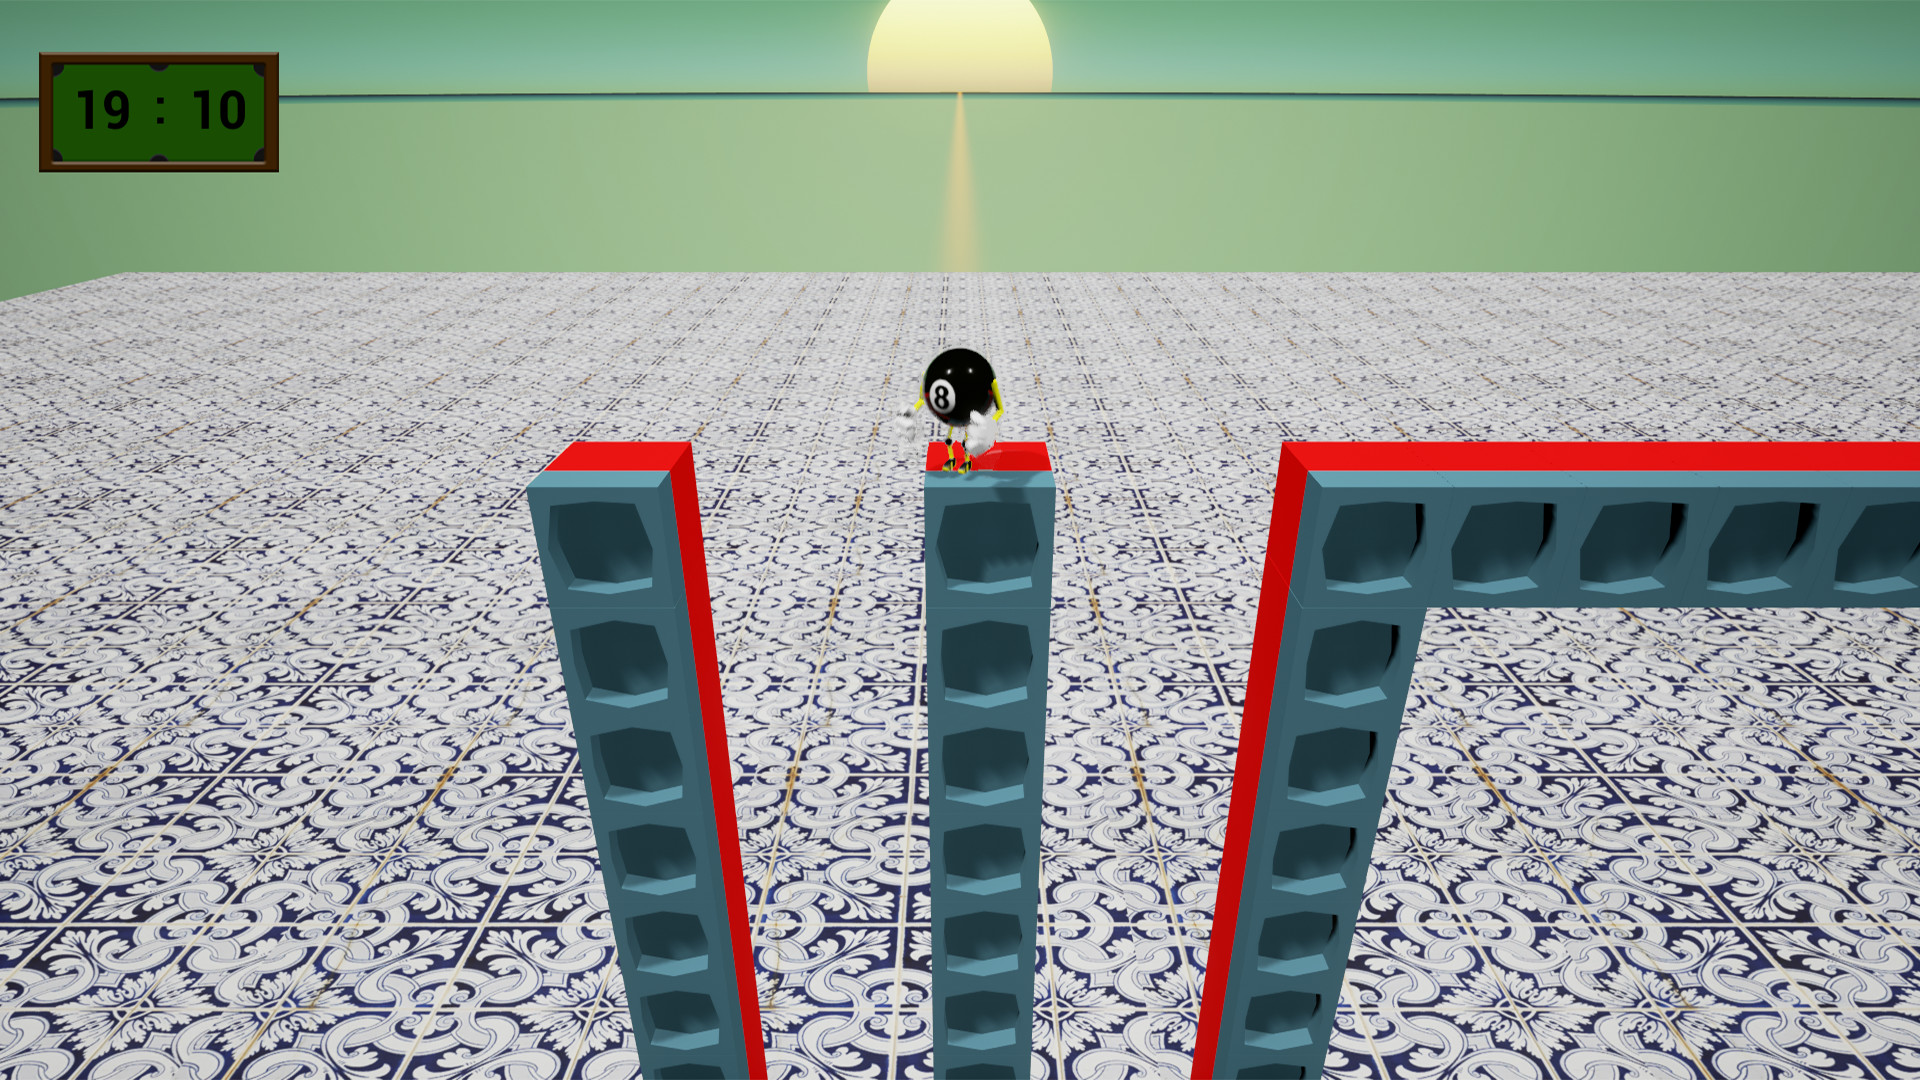 Игра 8 16 32. Игра скользить по платформам. Игры андроид с прыгающим шаром на двигающие платформы. Шарик прыгает набирая очки по движущим платформам андроид.